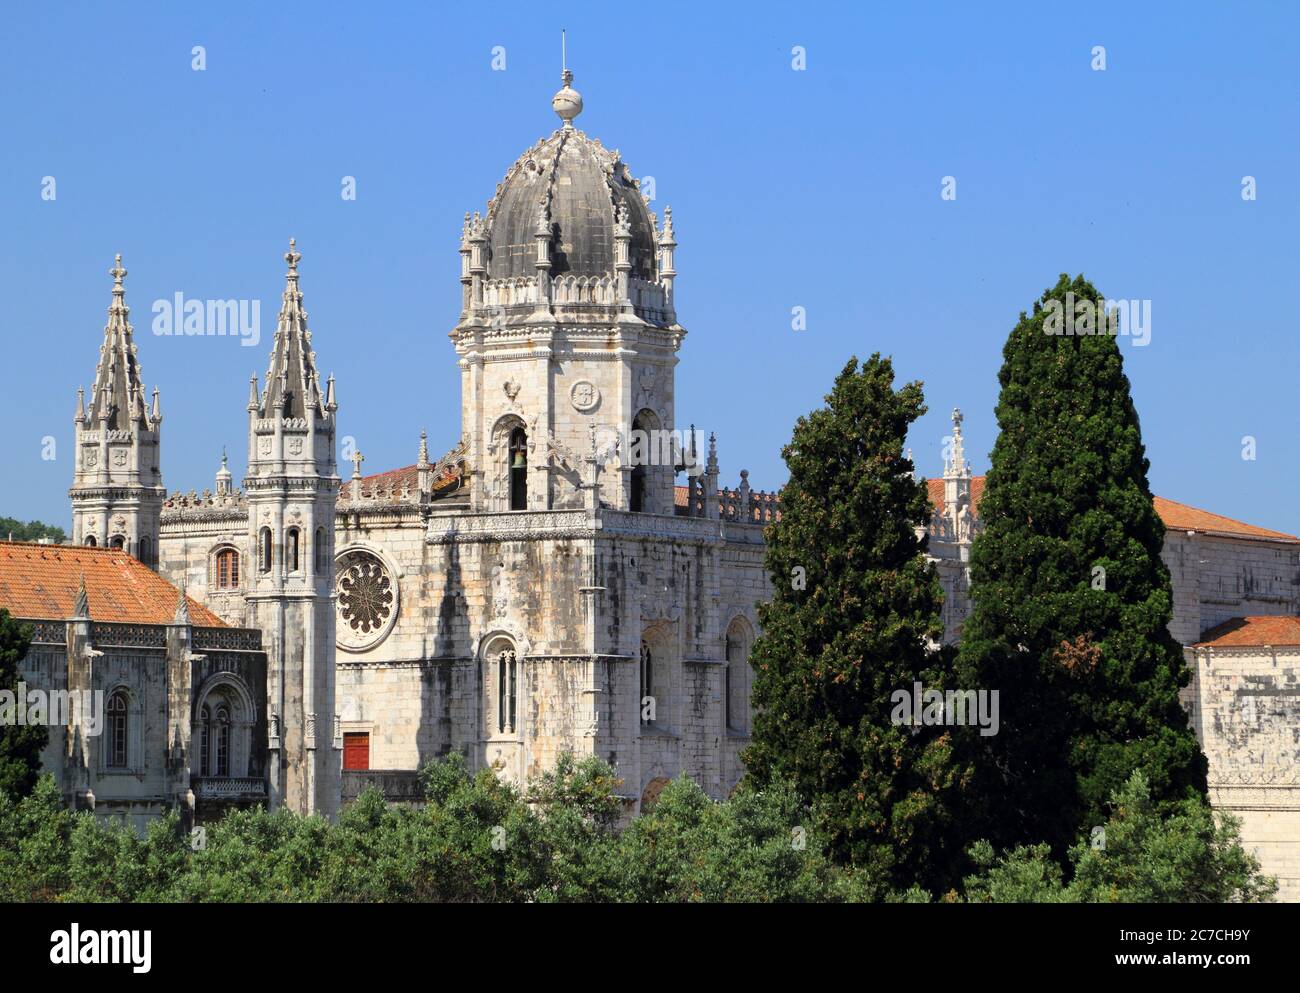 Portugal, Lissabon, Belem District, Hieronymites Kloster - Mosteiro dos Jeronimos erbaut hauptsächlich im Manuelinischen spätgotischen Stil - UNESCO-Weltkulturerbe. Stockfoto